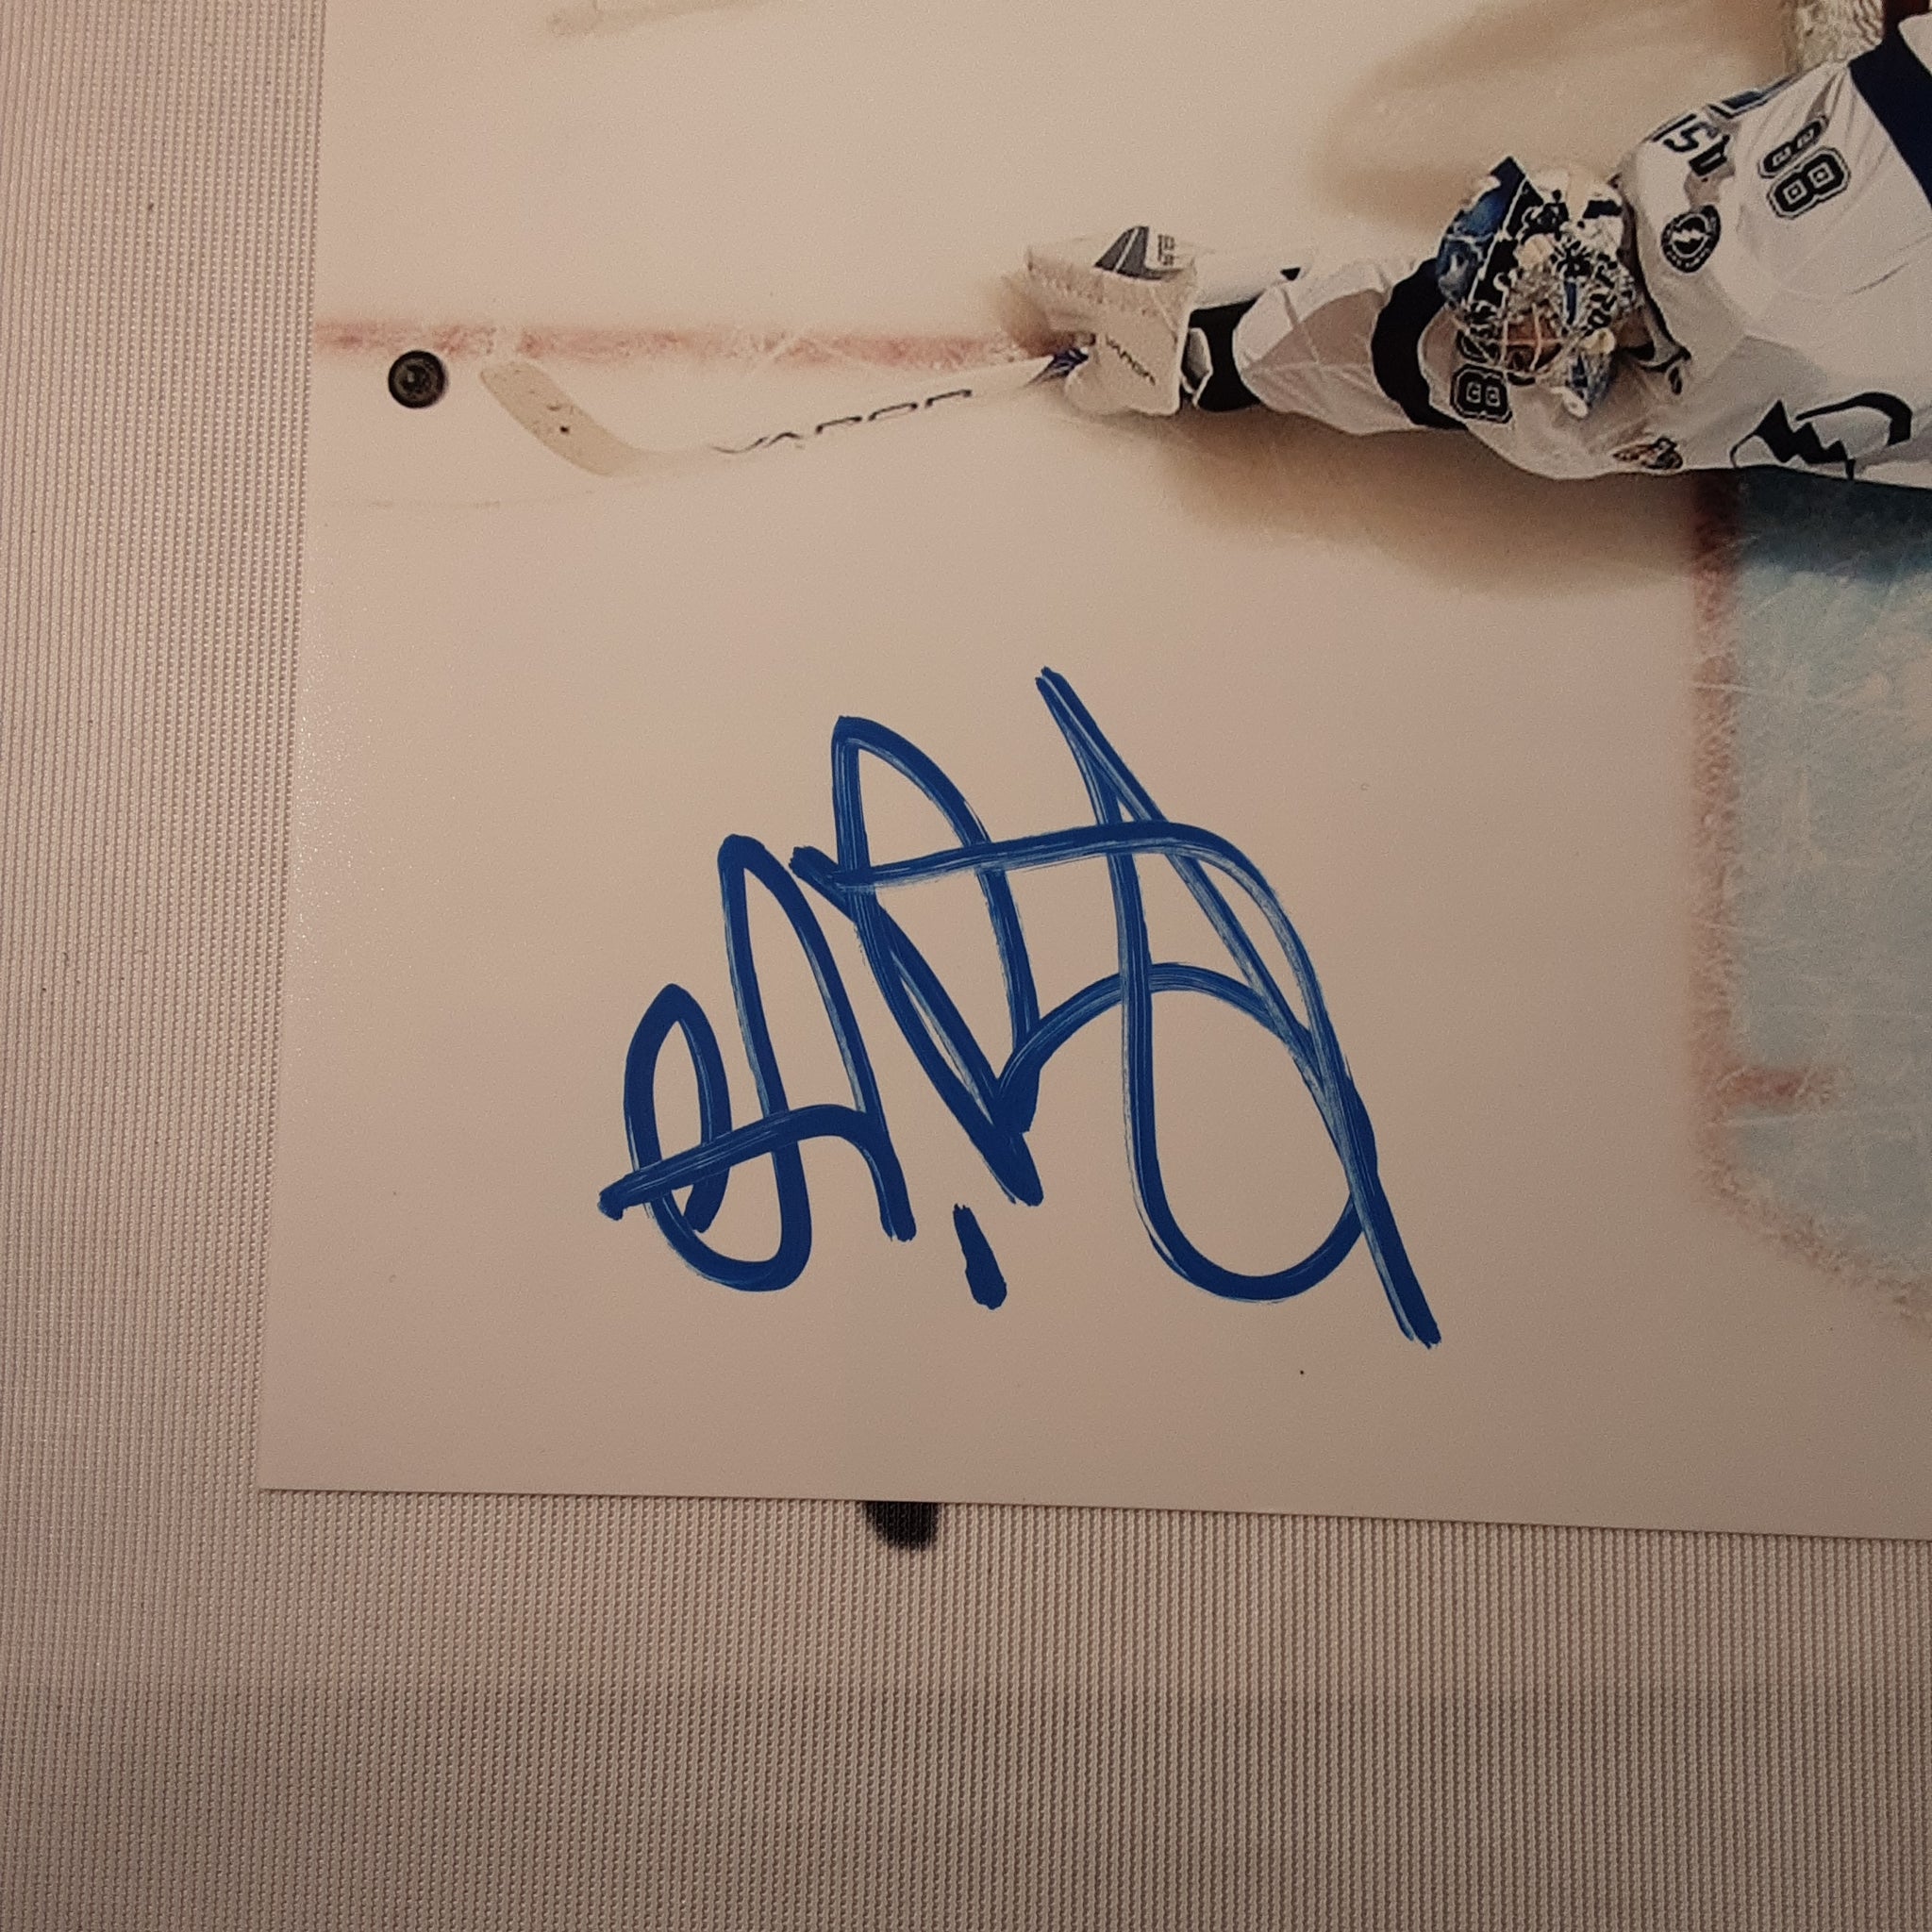 Andrei Vasilevsky Authentic Signed 8x10 Photo Autographed JSA.